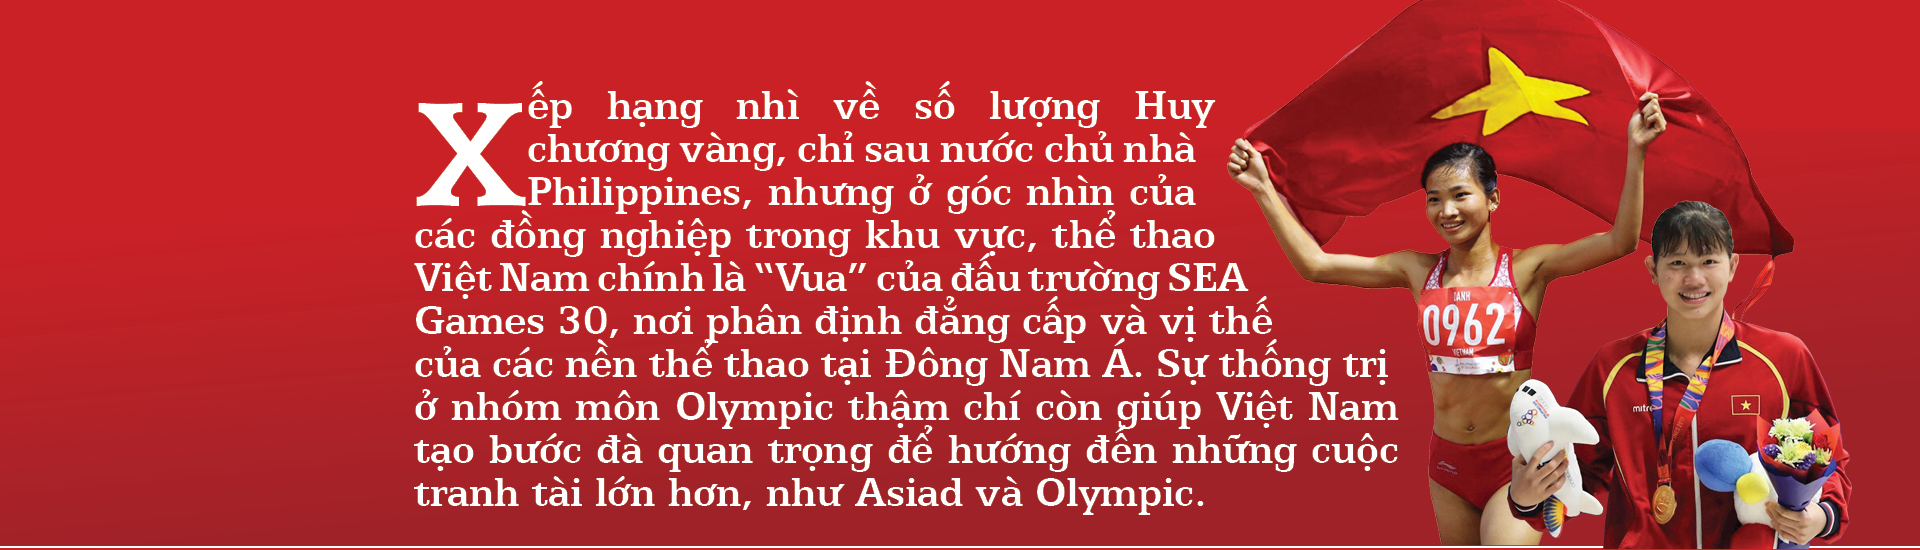 Thể thao Việt Nam - Kiêu hãnh đi về tương lai ảnh 1